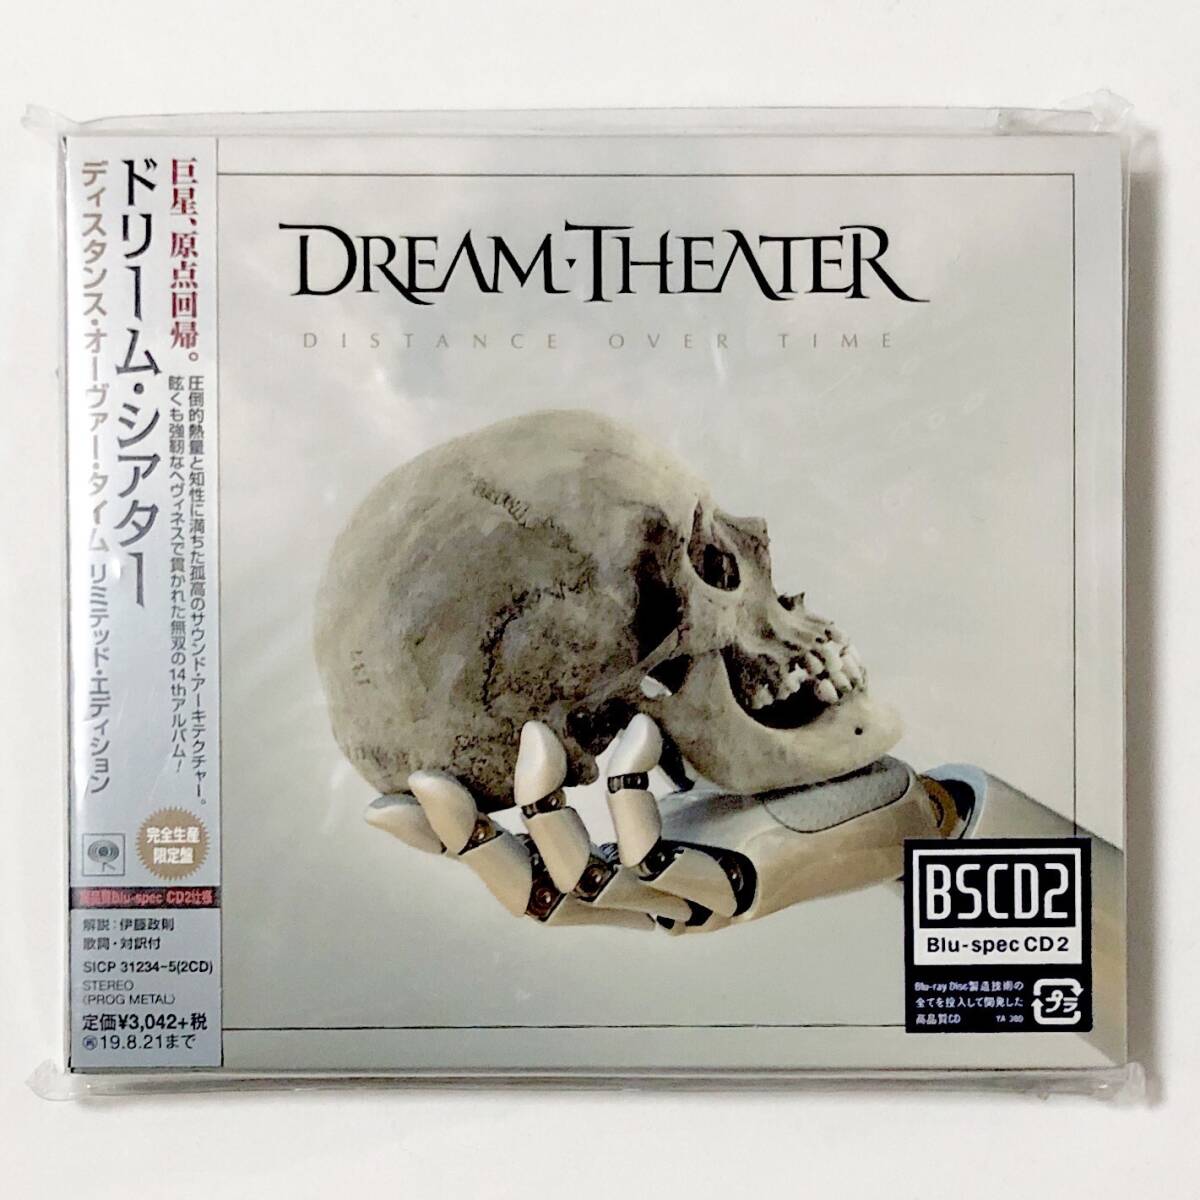 国内盤 Blu-spec2 CD 2枚組 Dream Theater / ドリーム・シアター Distance Over Time 帯付き ステッカー有 完全生産限定盤 プログレ メタルの画像1